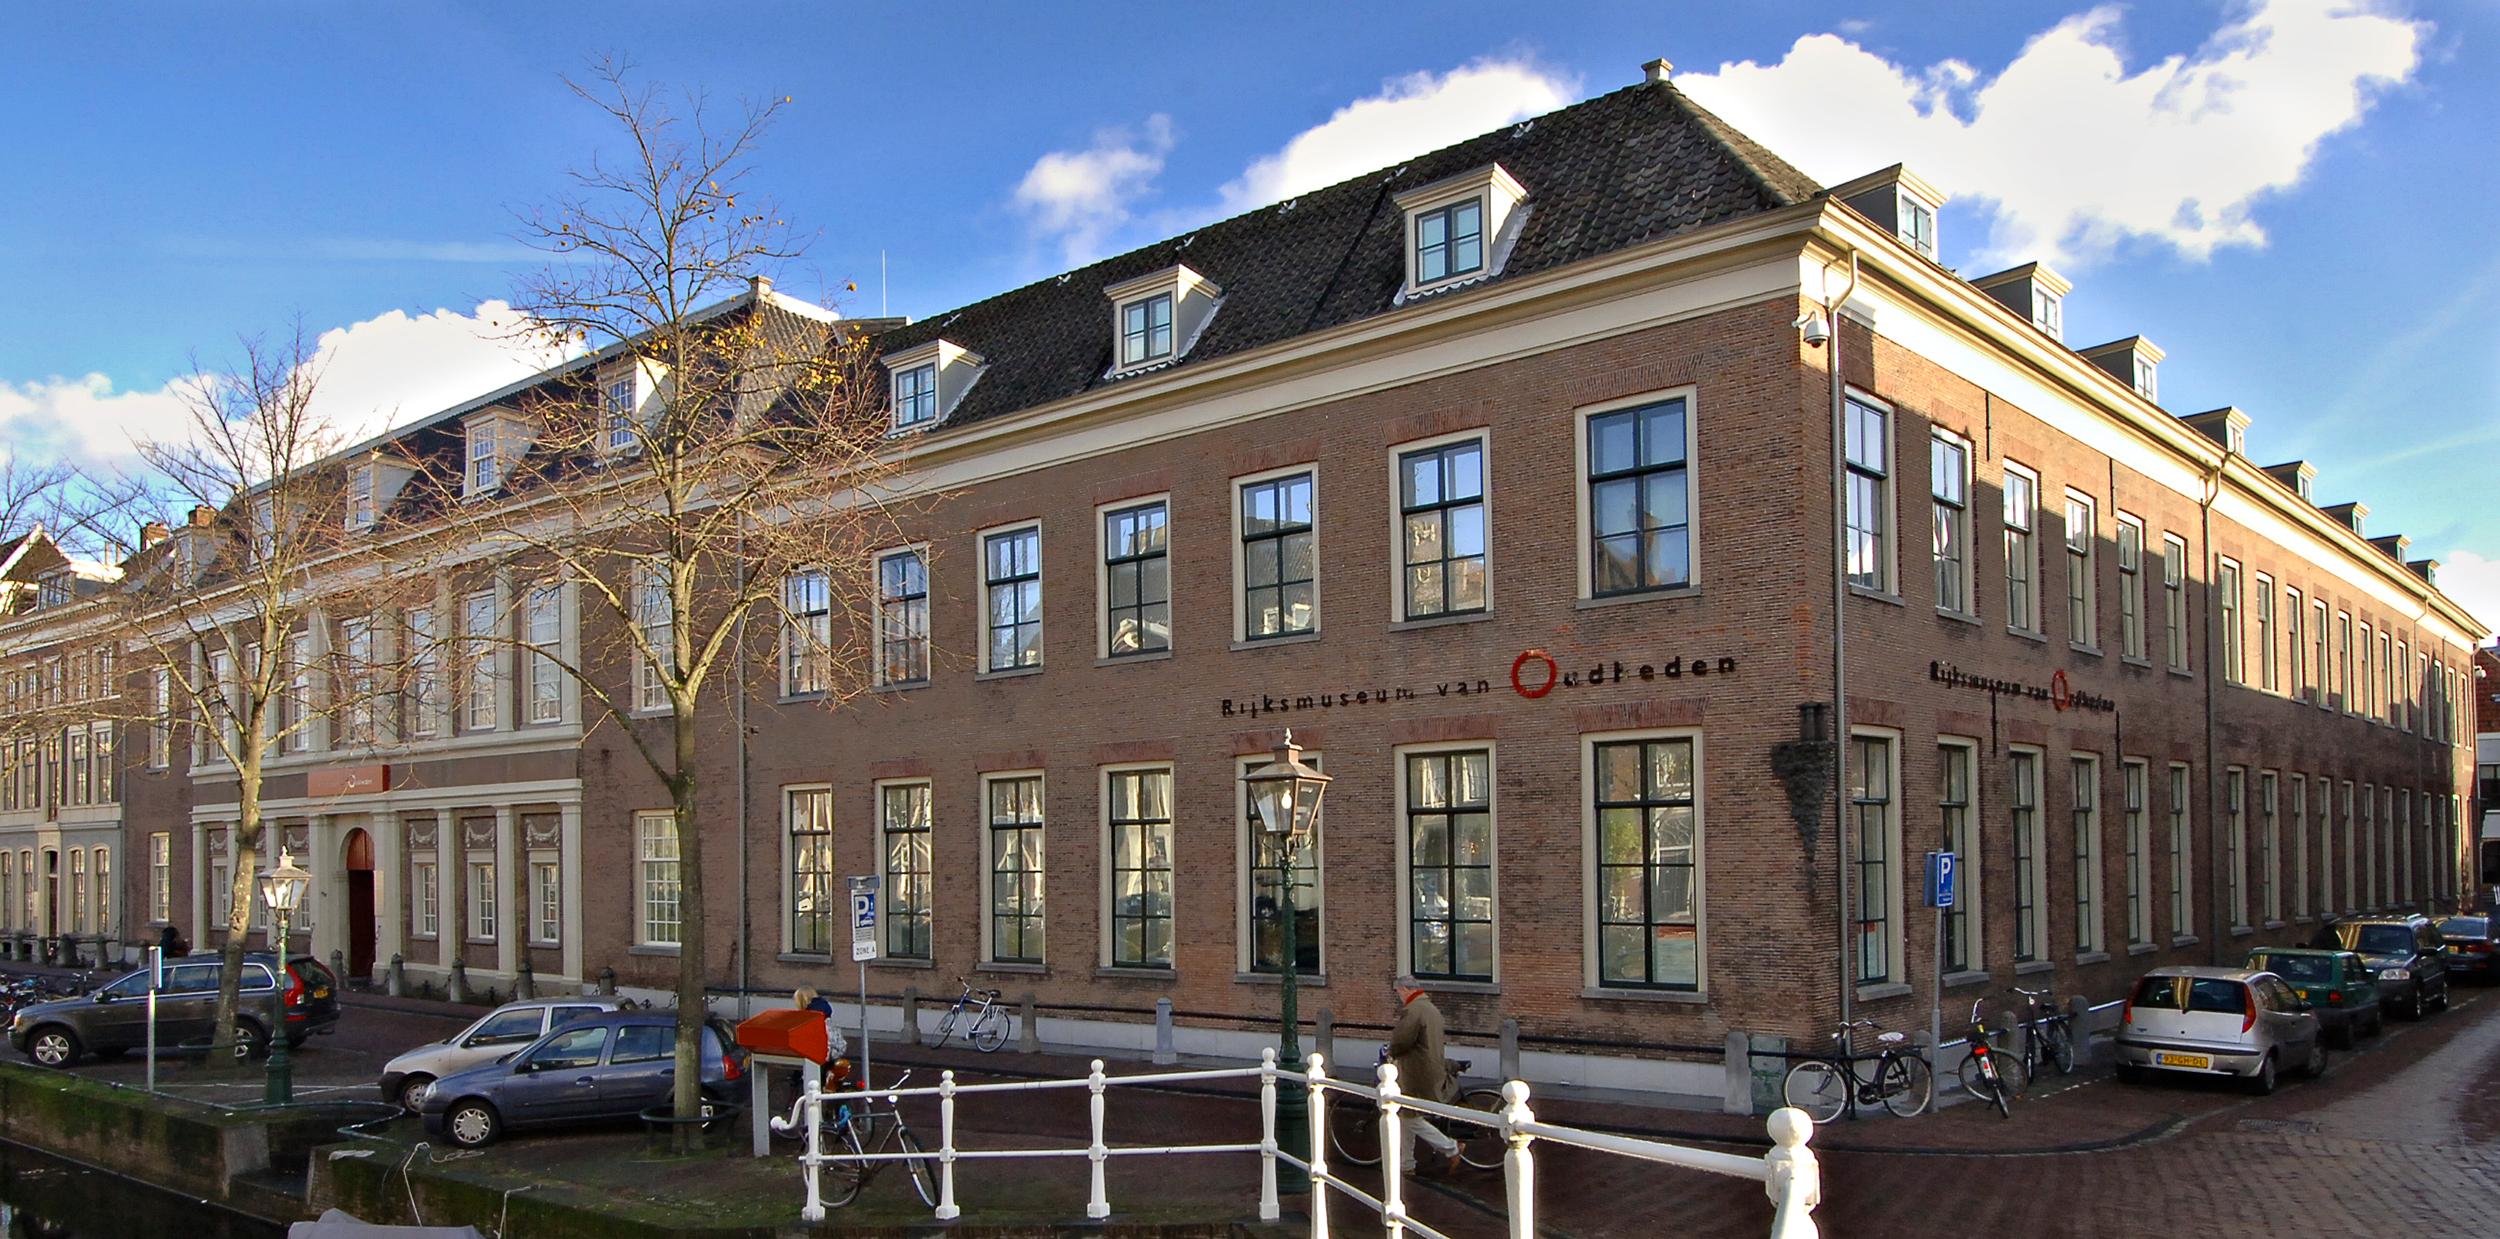 Λέιντεν - Ολλανδικό Εθνικό Μουσείο Αρχαιοτήτωνaea